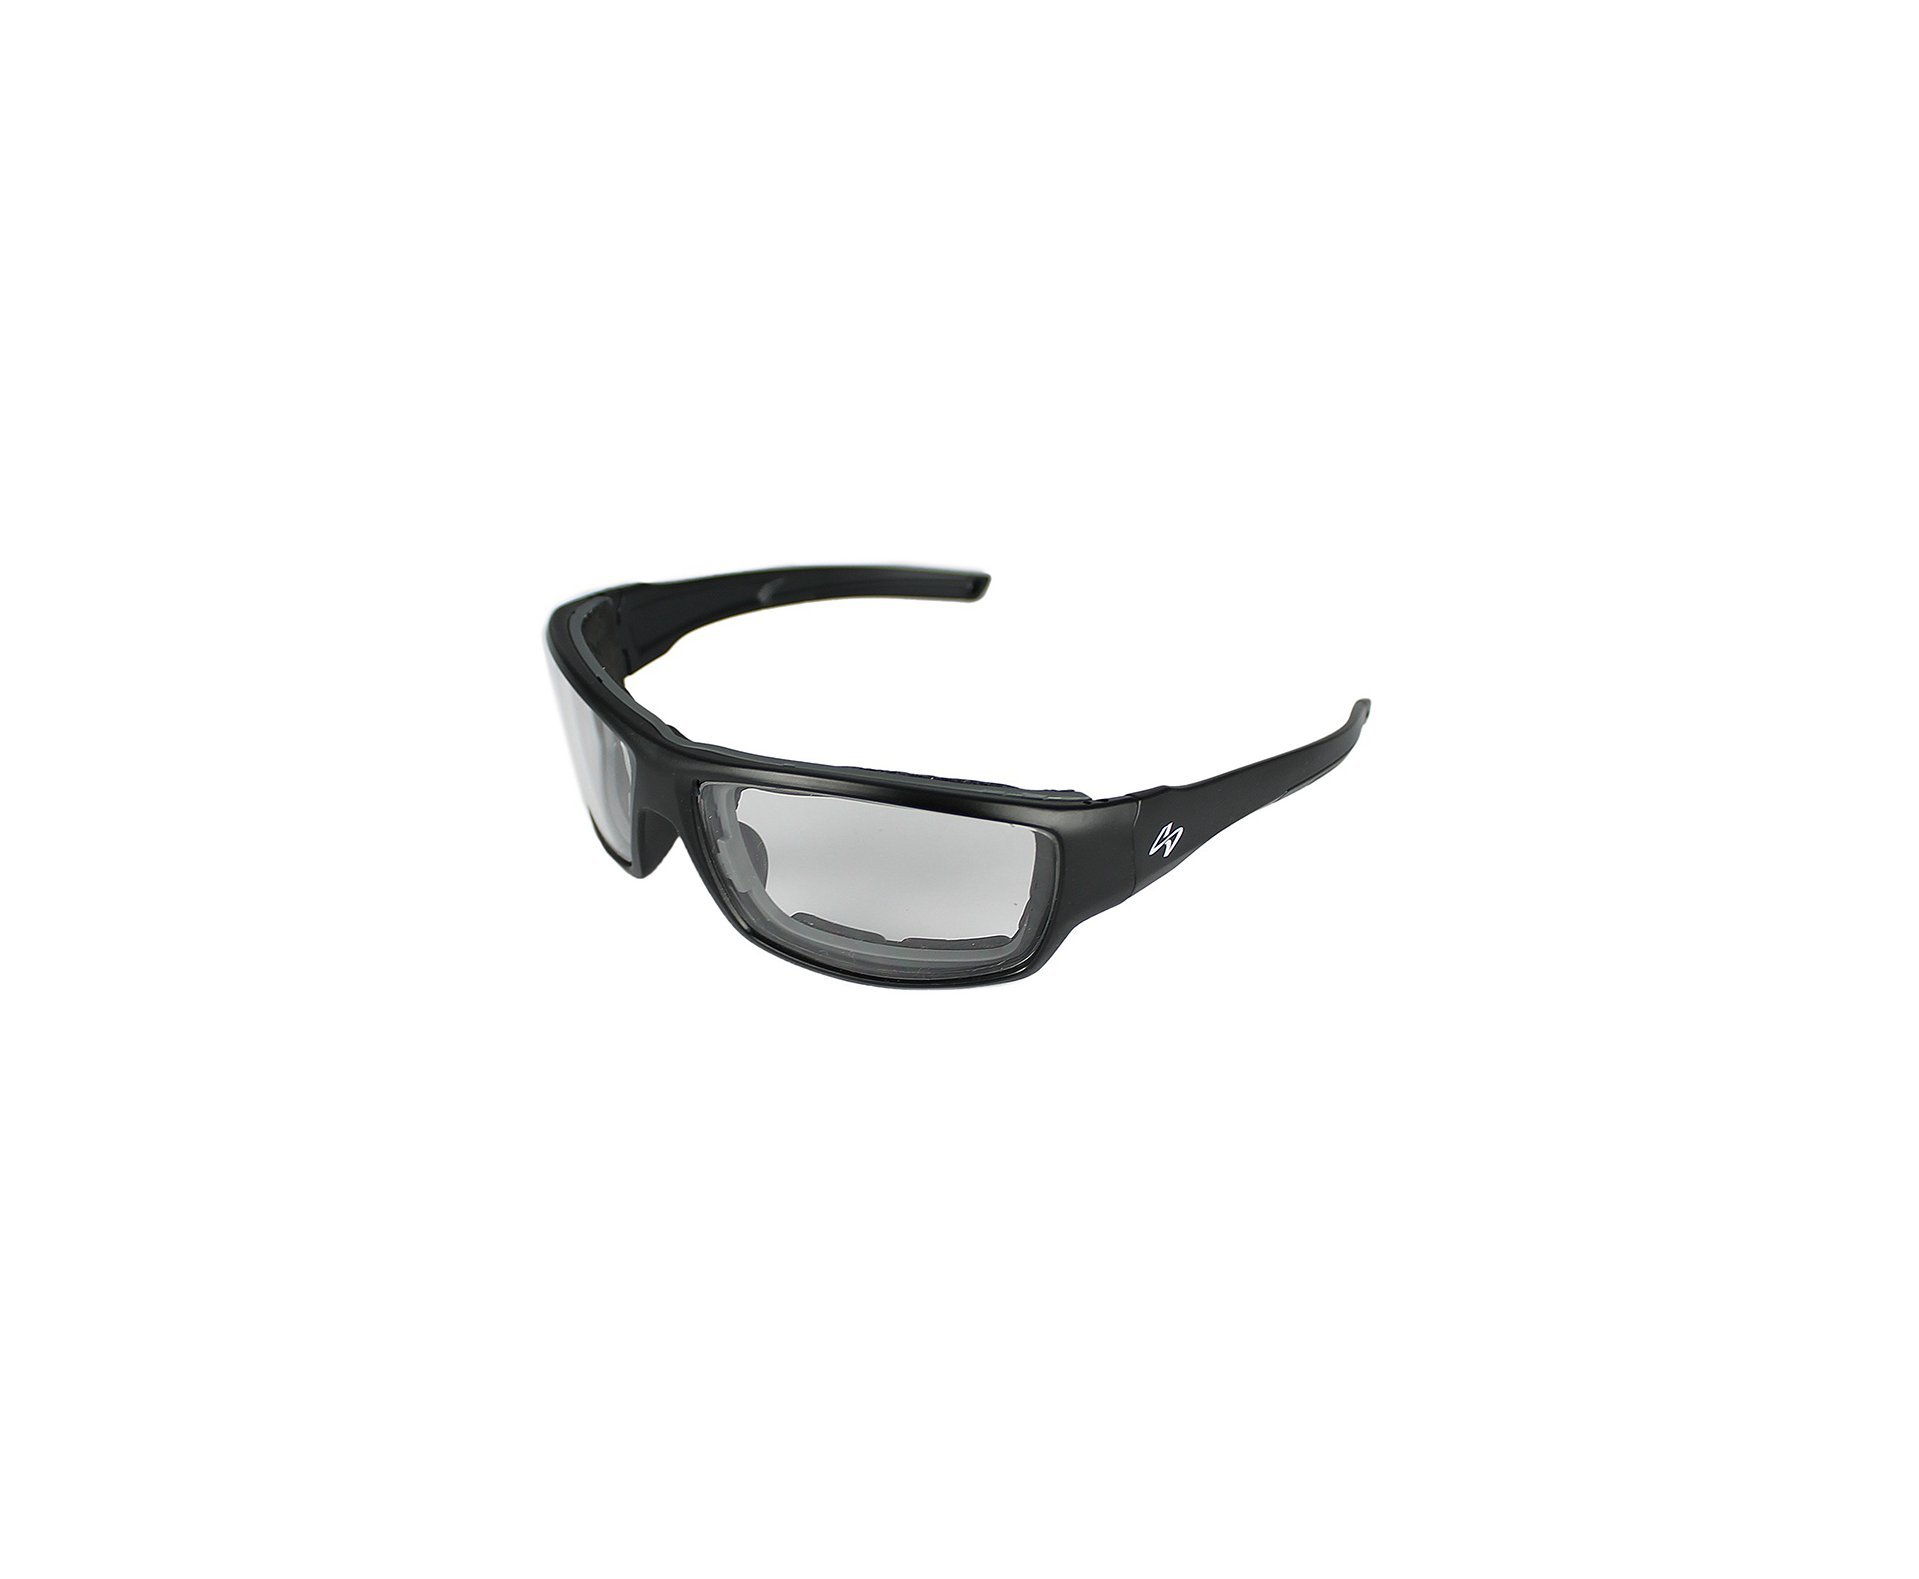 Óculos Balistico com Armação Preto Fosco + 2 lestes Preta/Transparente 20540-C123/C100 - Insano Shades